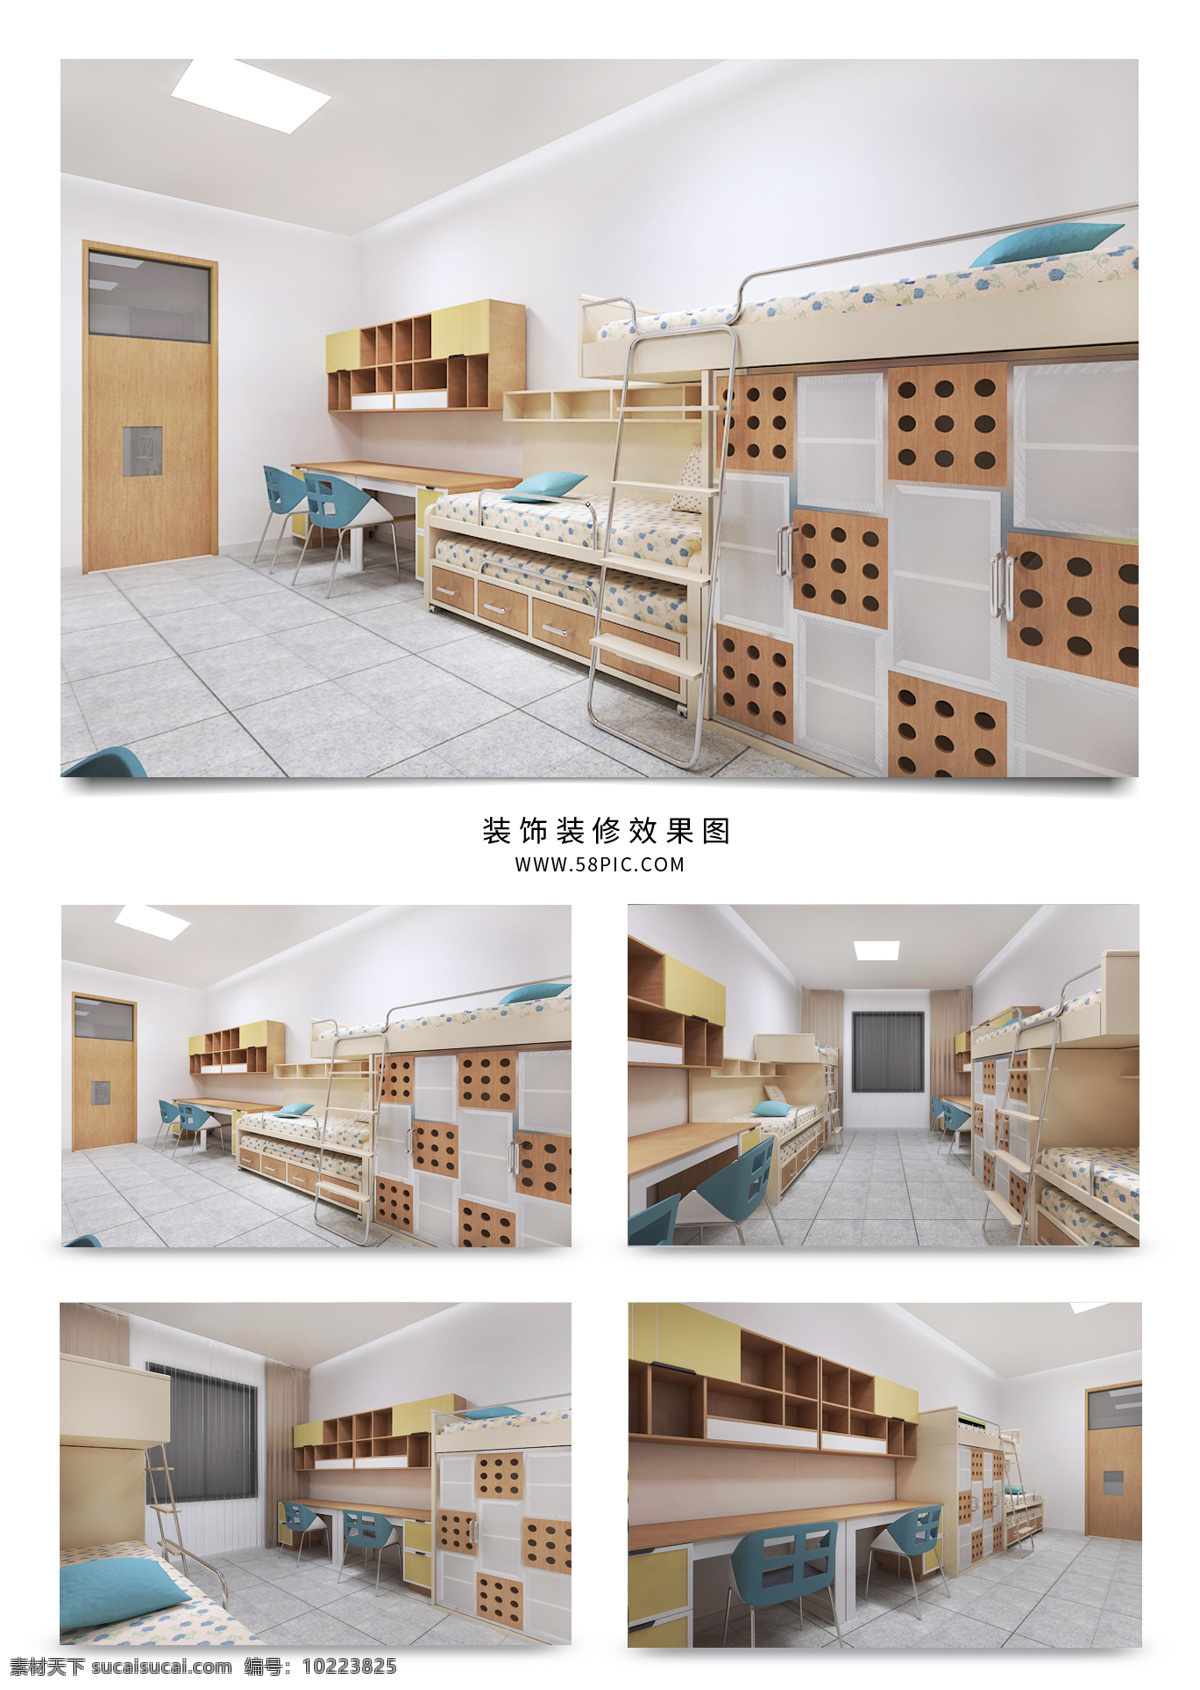 清新 宿舍 六人 间 四人 室内设计 橘色 蓝色 简约 多功能床 可伸缩 工装效果图